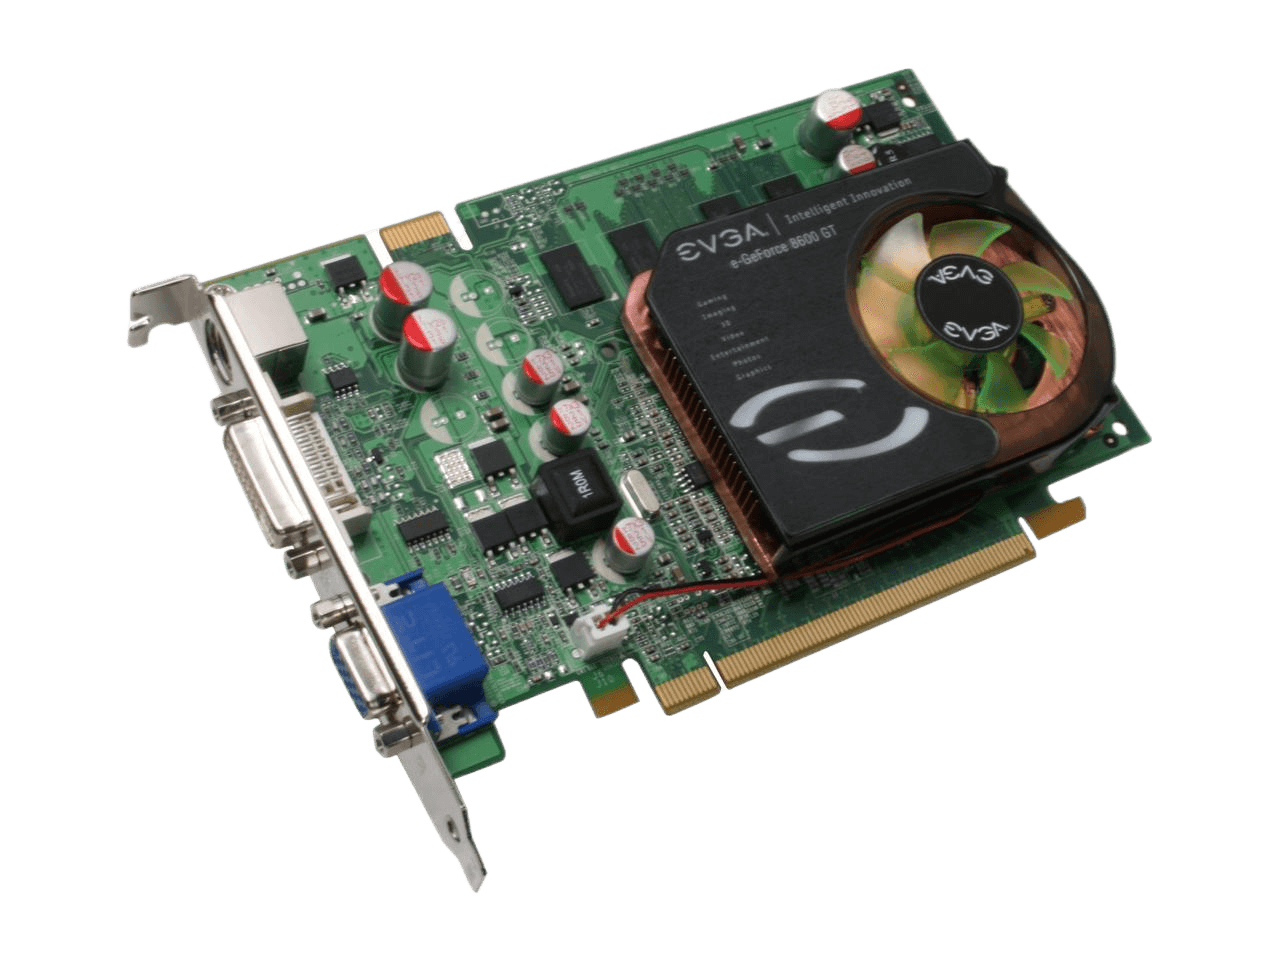 EVGA GeForce 8600 GT 1GB GDDR2 PCI Express x16 SLI Support Video Card 01G-P2-N795-TR